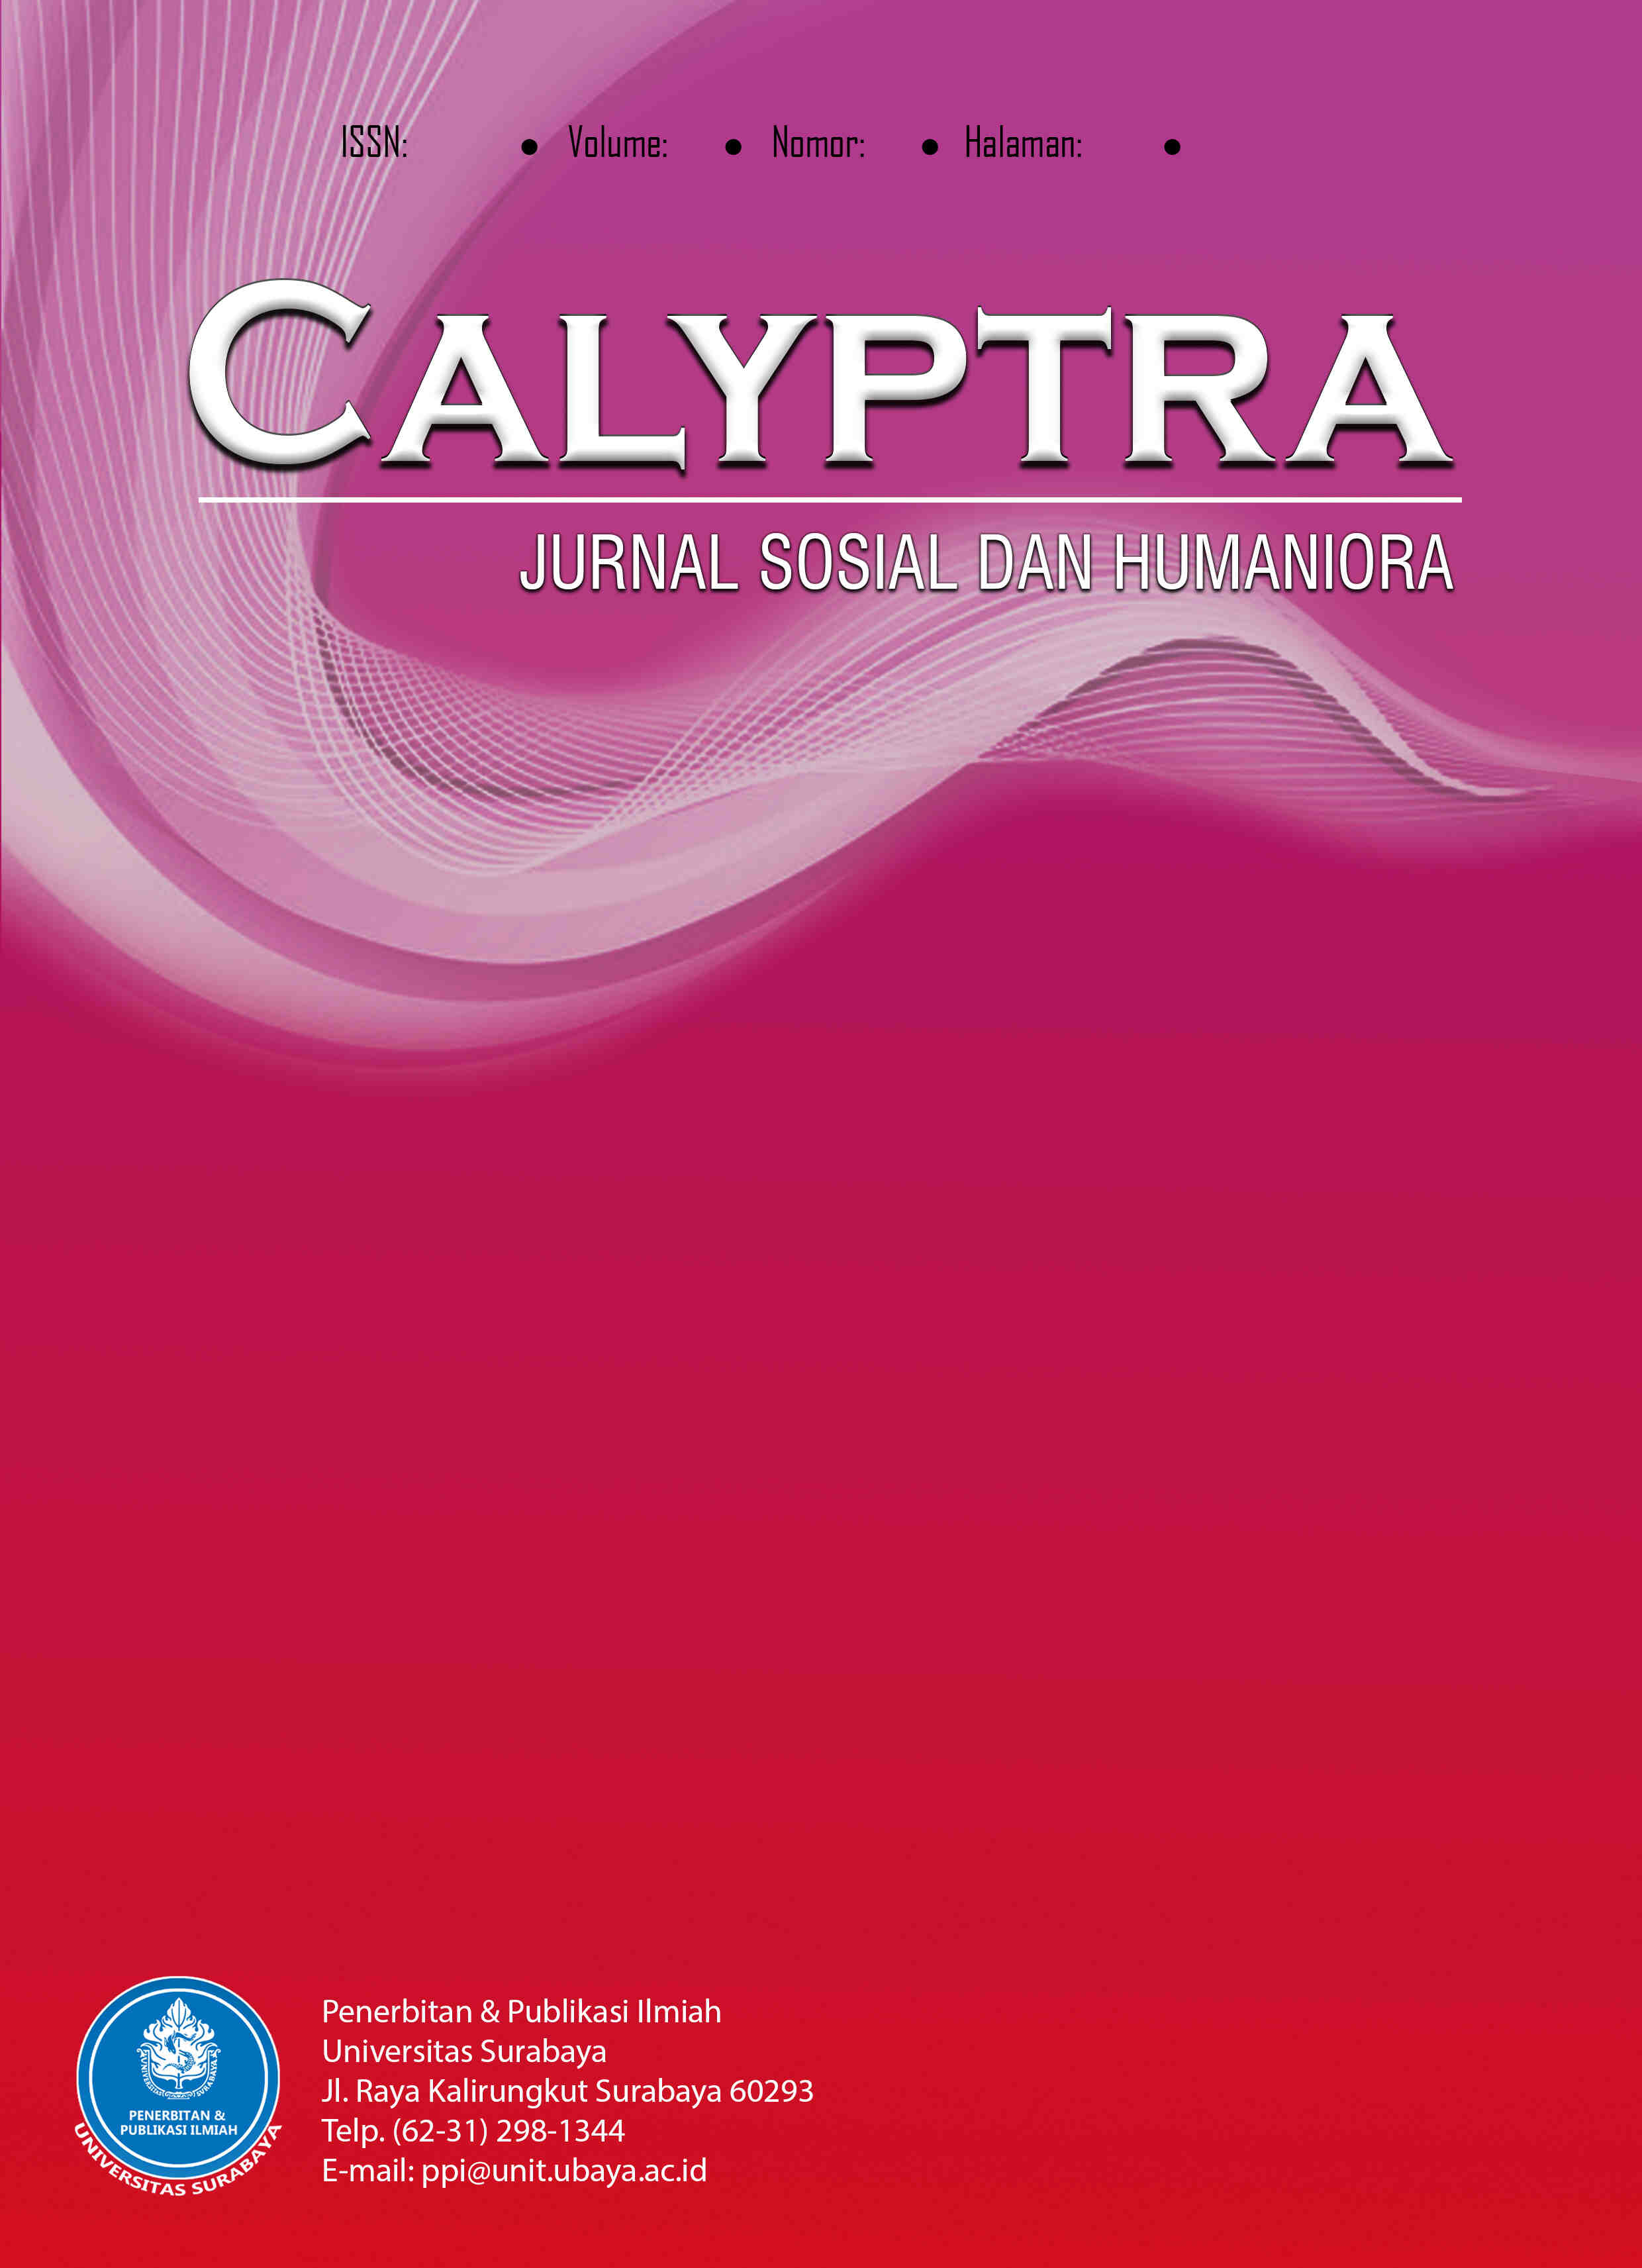 COVER CALYPTRA KESEHATAN DAN KEDOKTERAN